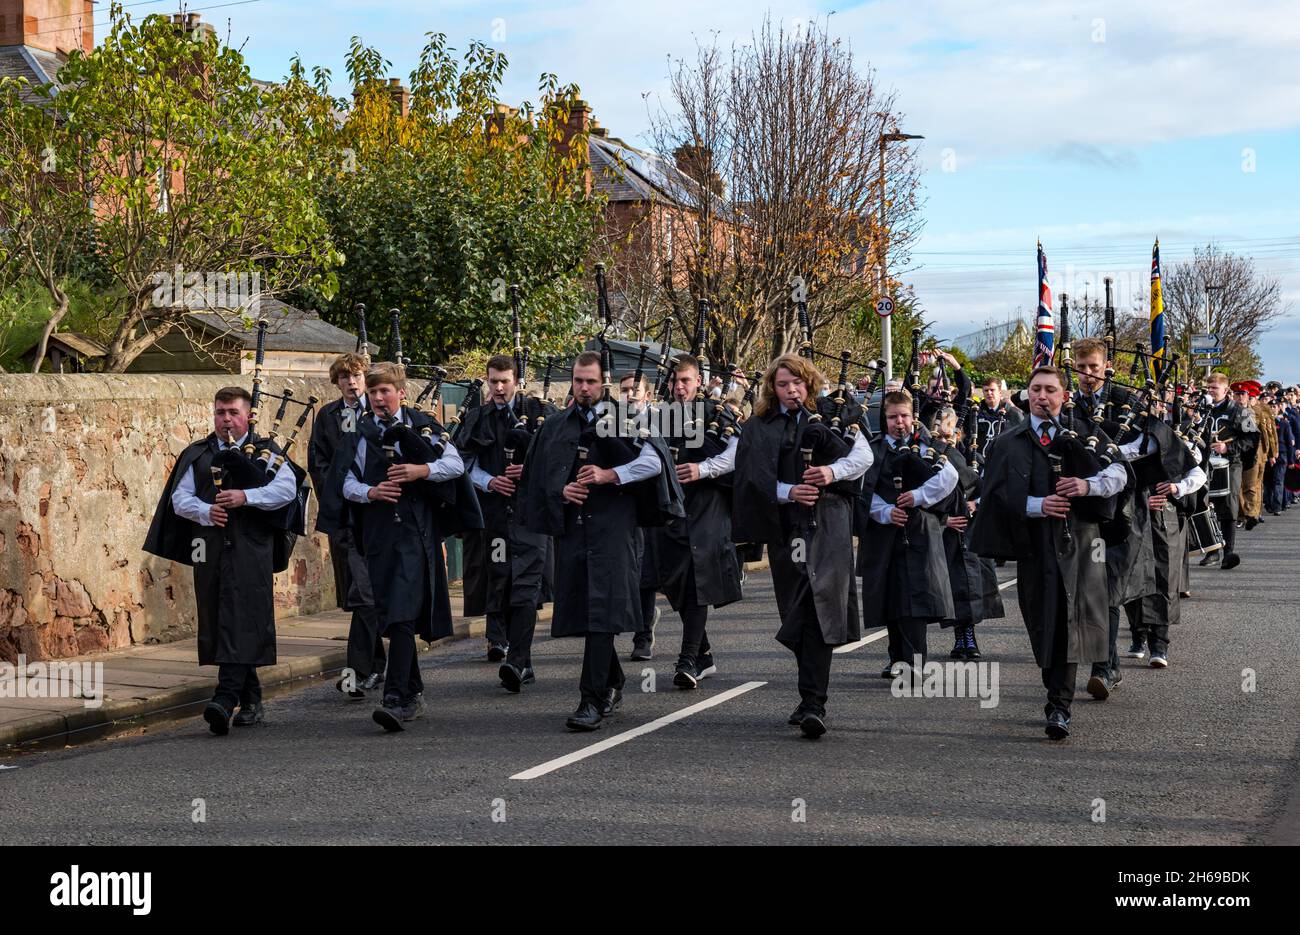 Dunbar, East Lothian, Écosse, Royaume-Uni, 14 novembre 2021.Jour du souvenir : défilé dans la ville, dirigé par la Dunbar British Legion Pipe Band, au mémorial de guerre pour un service commémoratif Banque D'Images